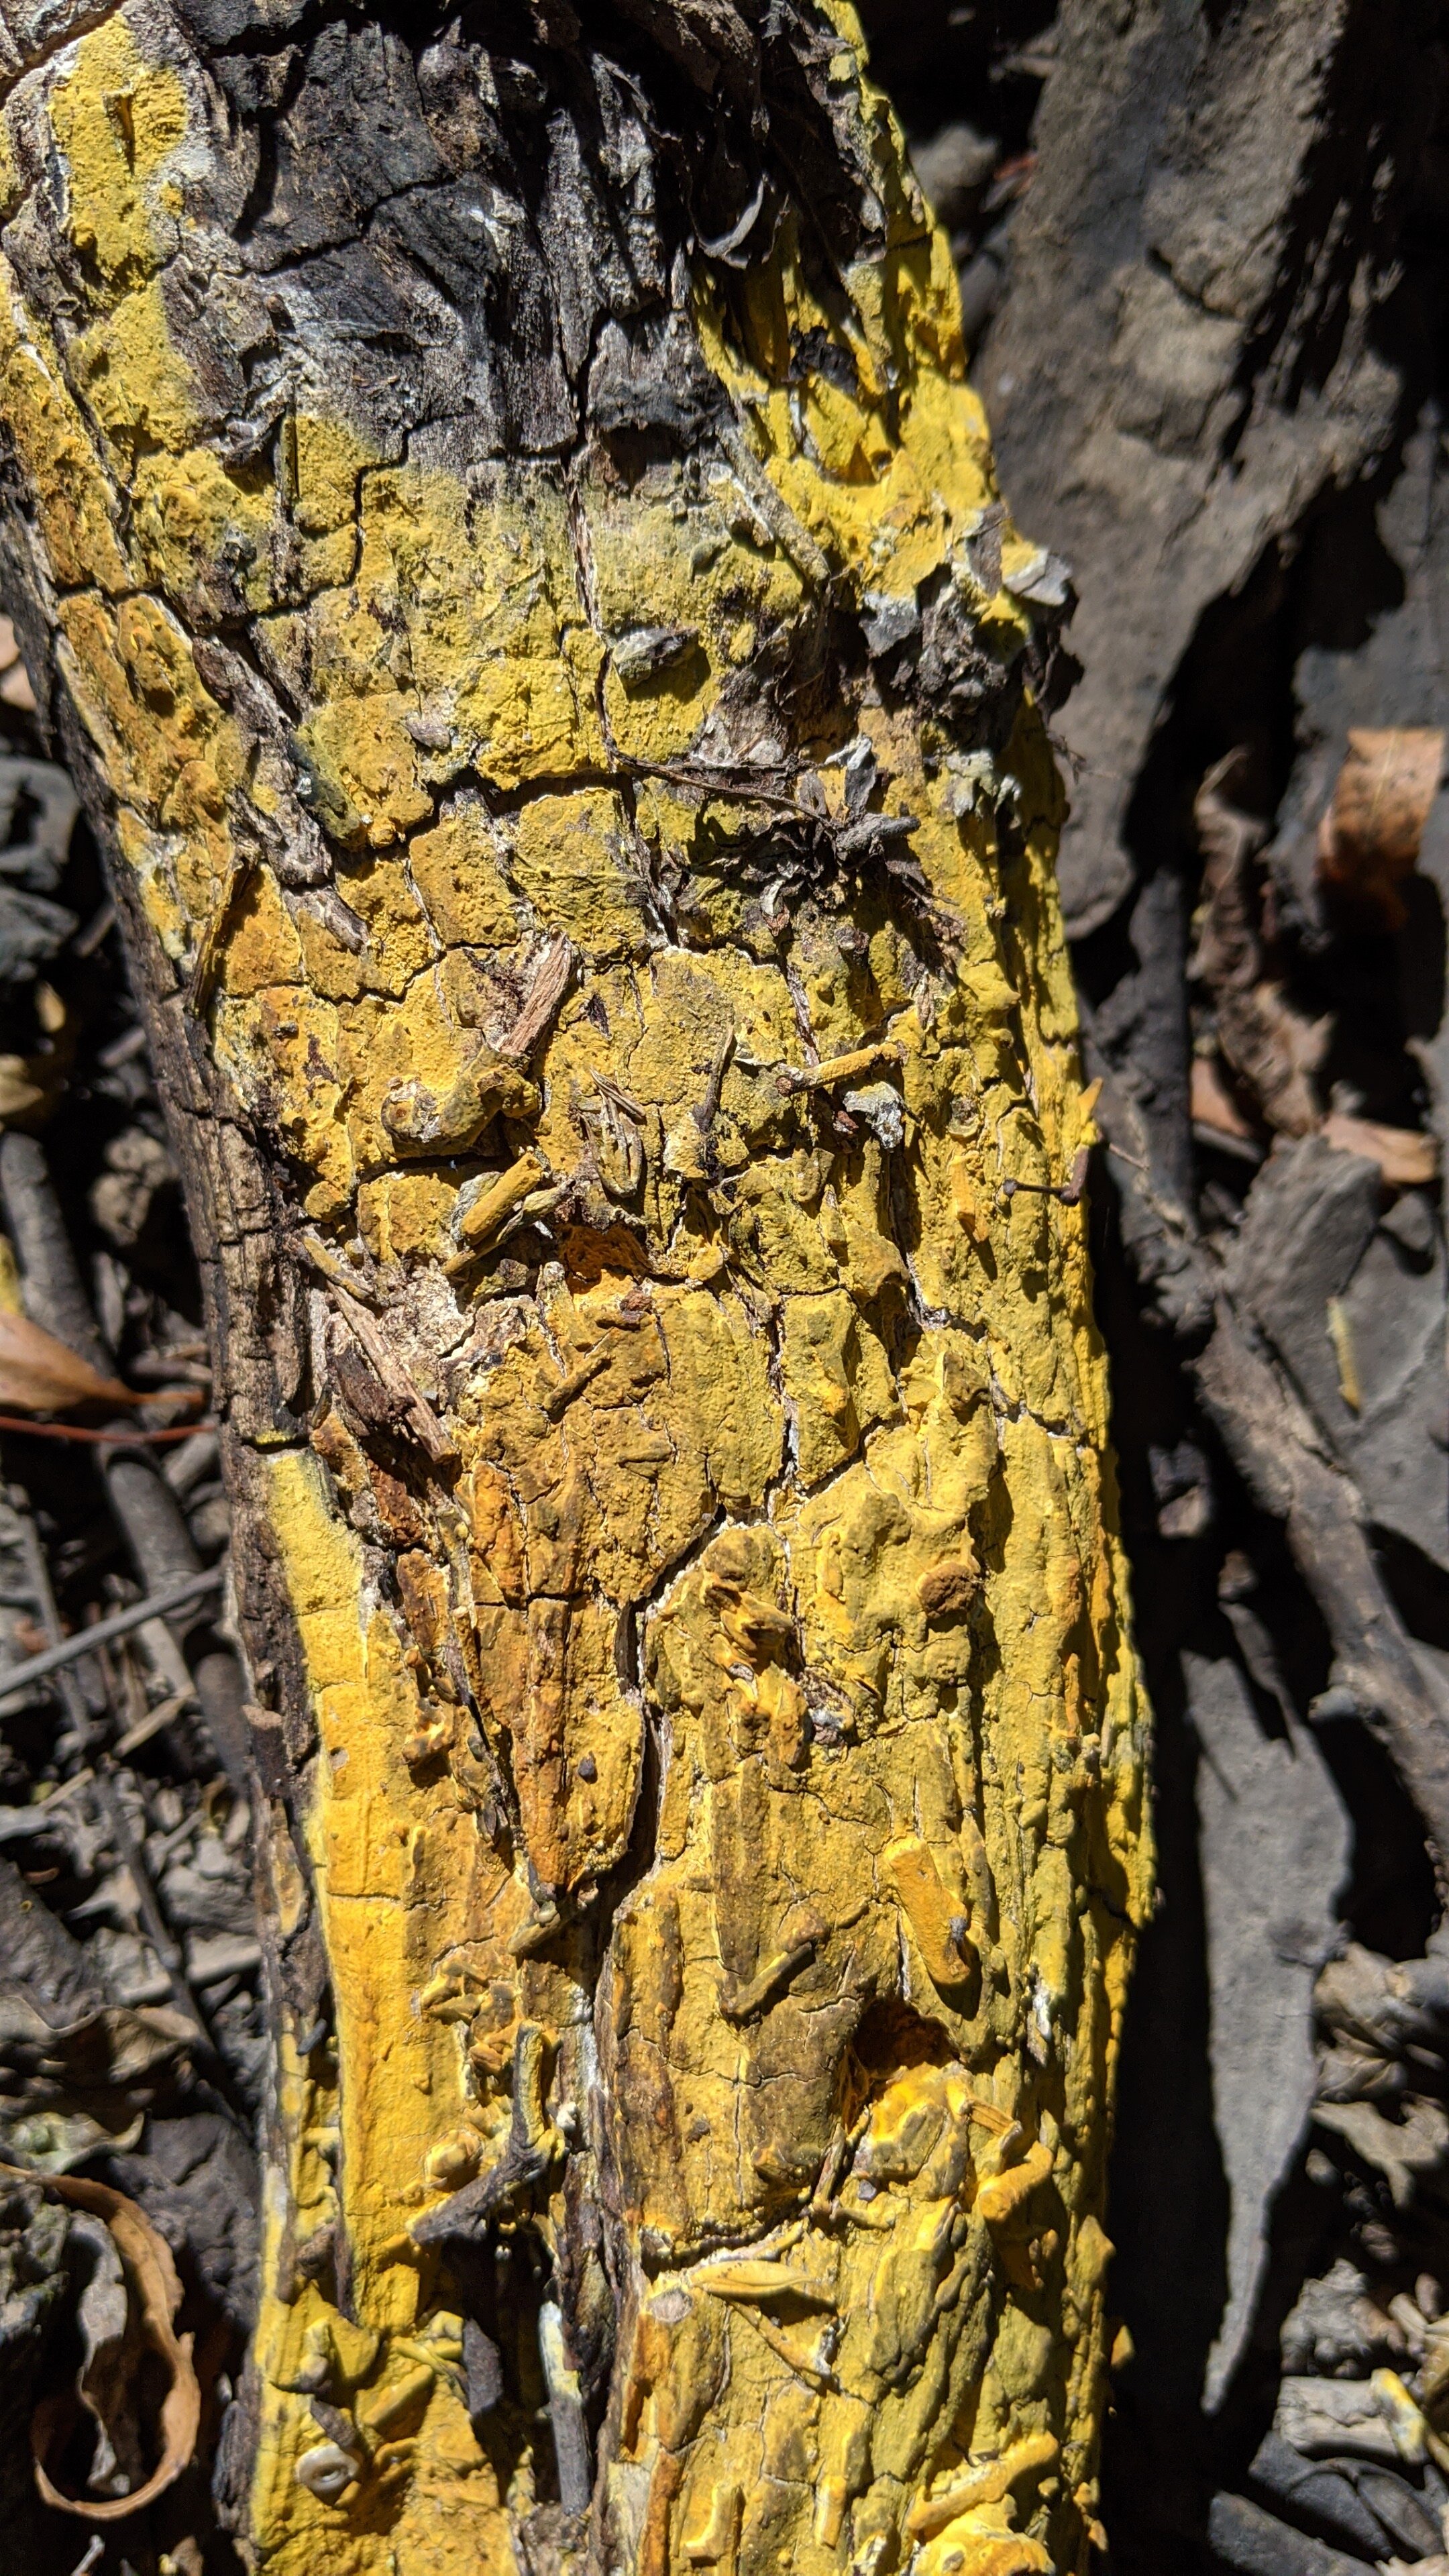 Gold dust lichen, Chrysothrix candelaris